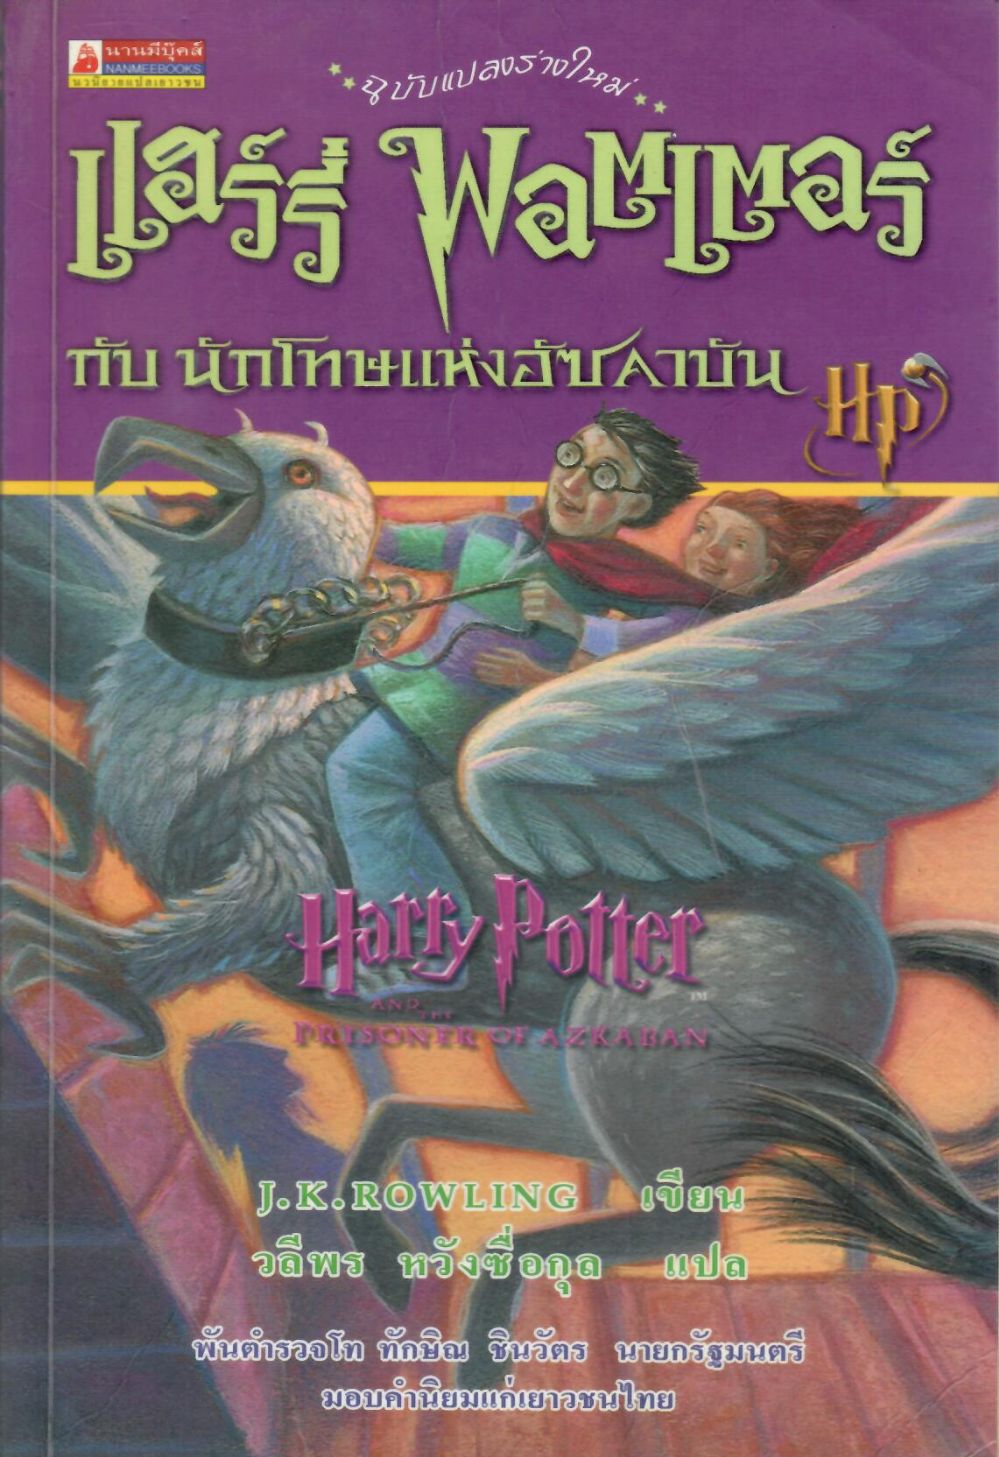 แฮร์รี่ พอตเตอร์ กับนักโทษแห่งอัซคาบัน = Harry Potter And The Prisoner of Azkaban/ เจ.เค. โรว์ลิ่ง, ผู้เขียน ; วลีพร หวังซื่อกุล, ผู้แปล